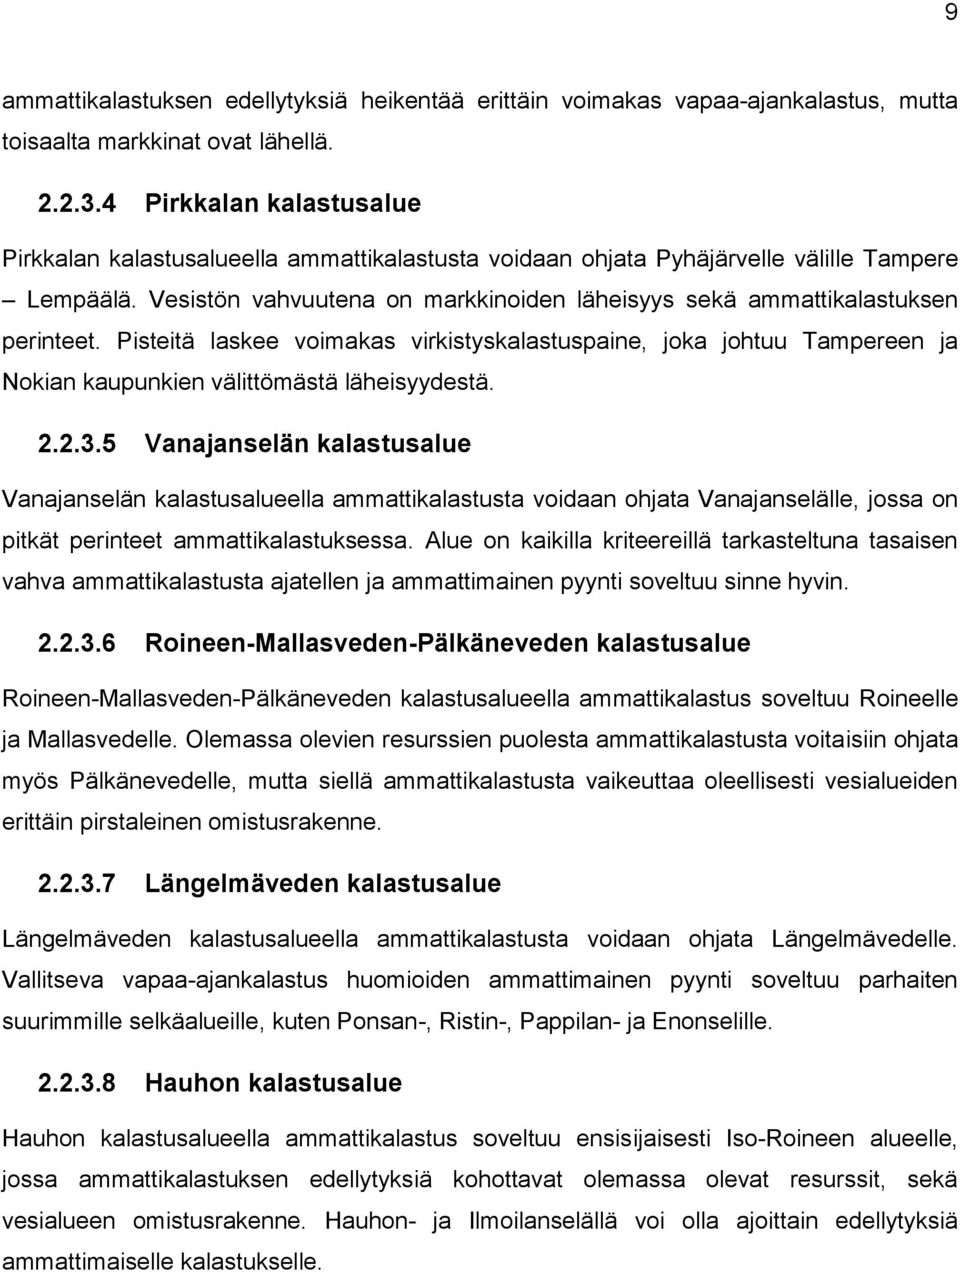 Vesistön vahvuutena on markkinoiden läheisyys sekä ammattikalastuksen perinteet. Pisteitä laskee voimakas virkistyskalastuspaine, joka johtuu Tampereen ja Nokian kaupunkien välittömästä läheisyydestä.